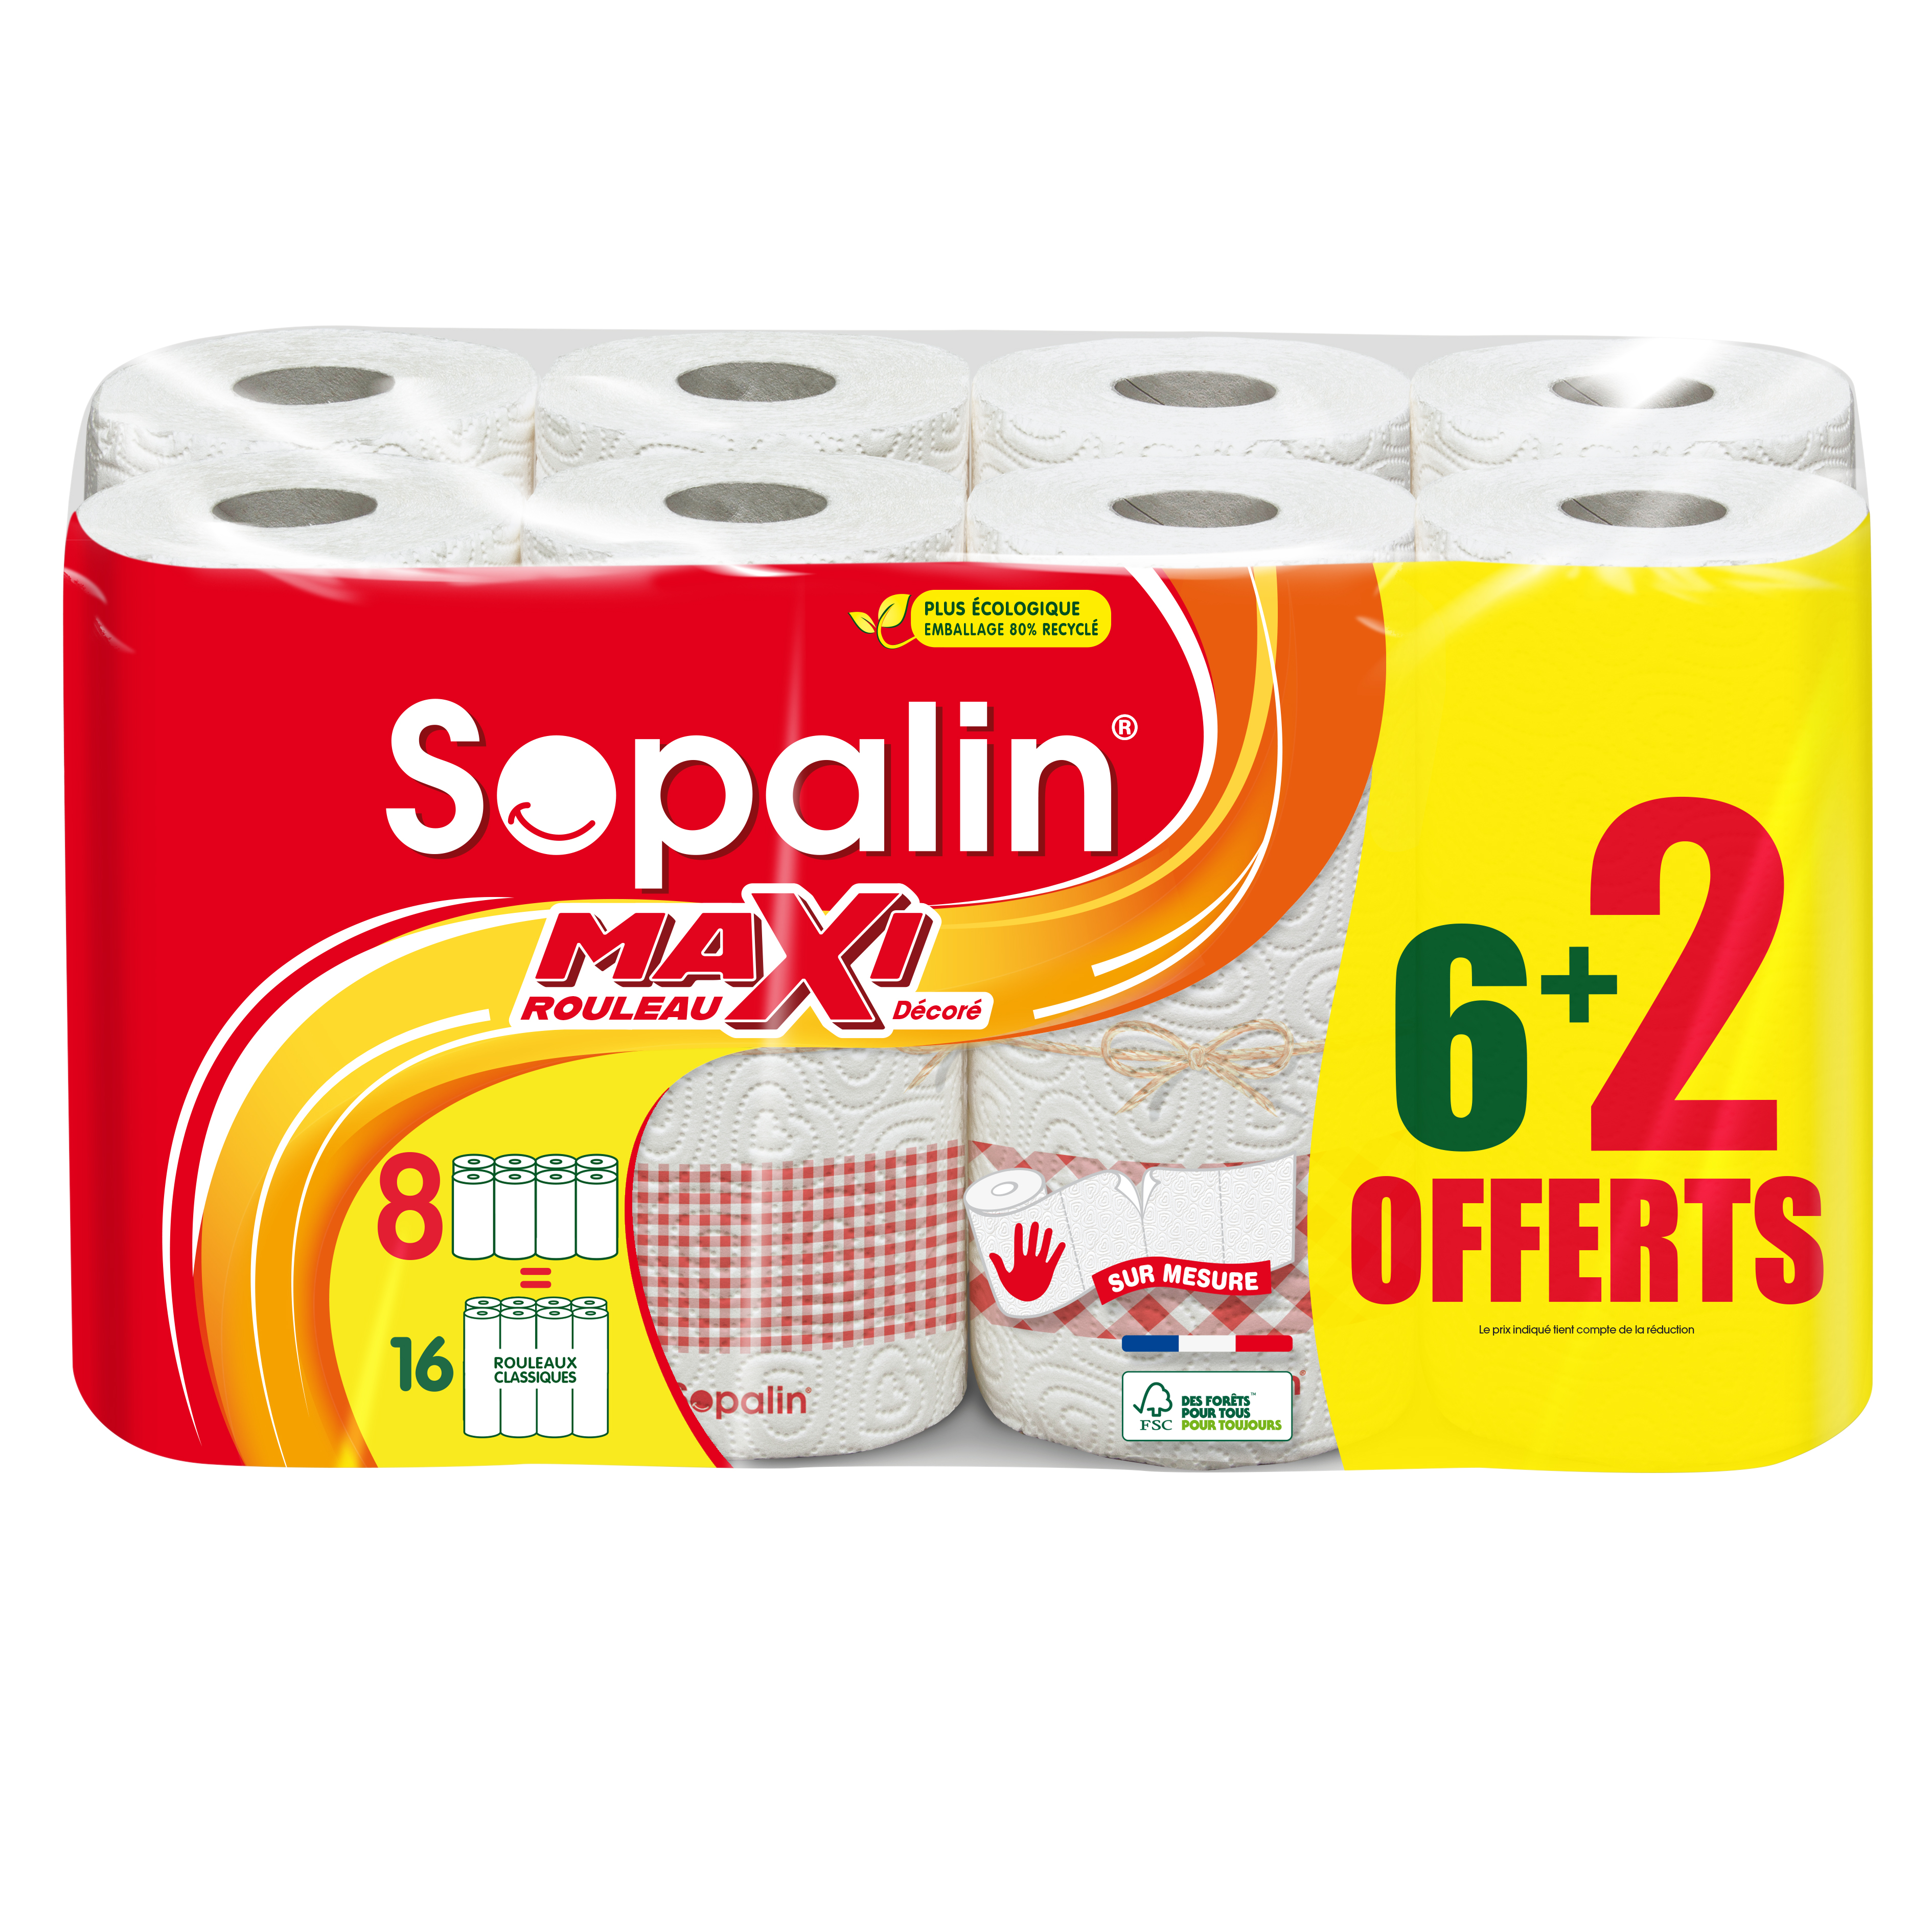 SOPALIN Maxi rouleau Essuie tout sur mesure décoré 6+2 offerts pas cher 